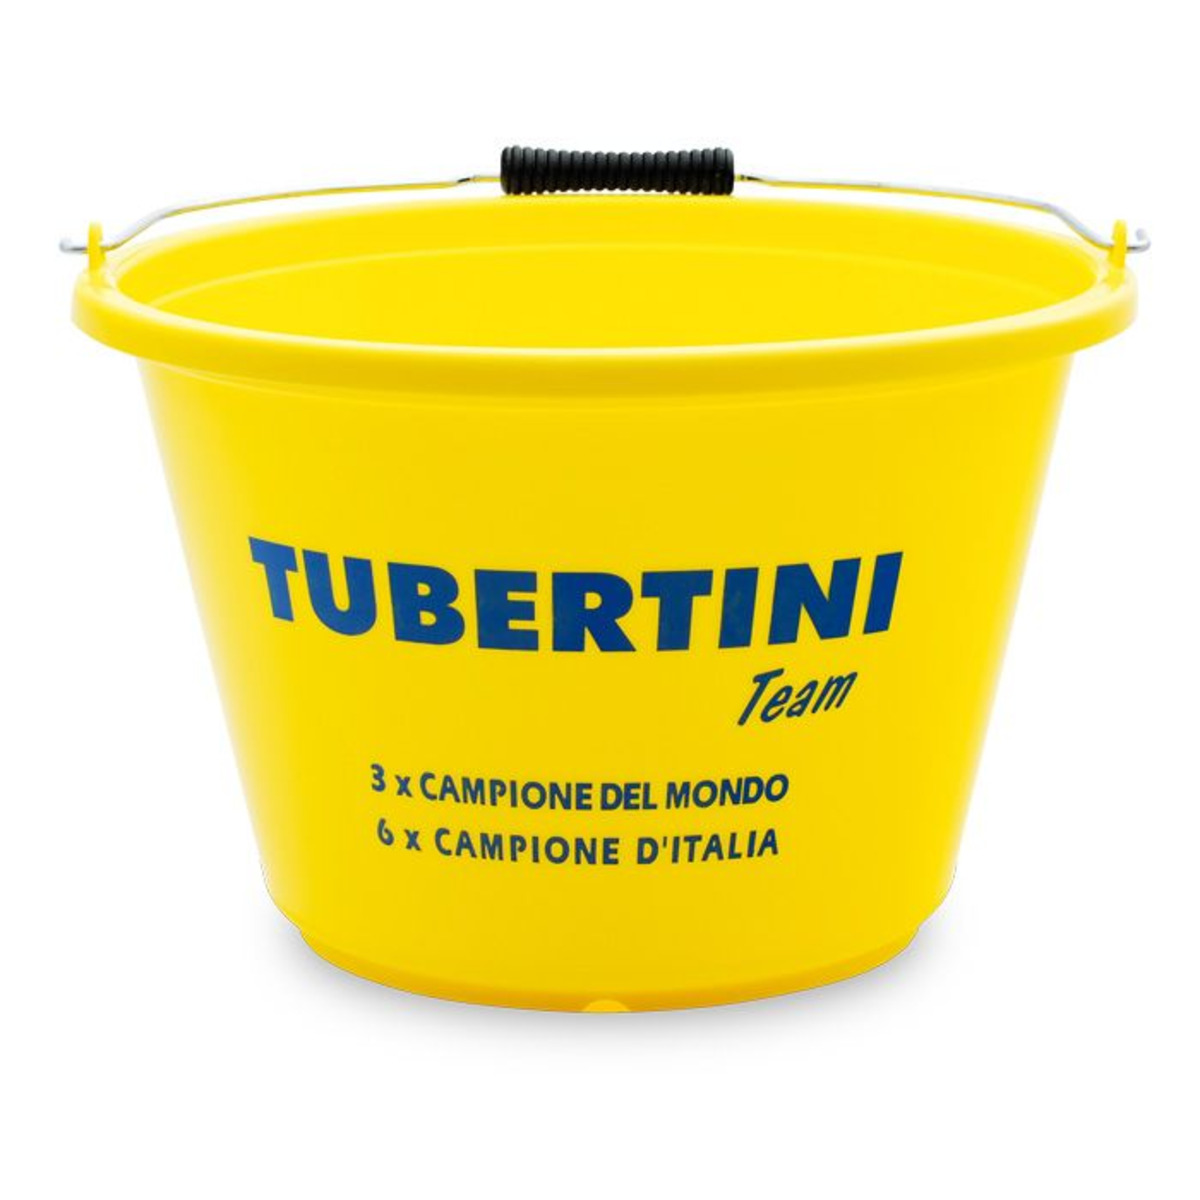 Tubertini Cubo PVC  -  Balde PVC - 17 lt        